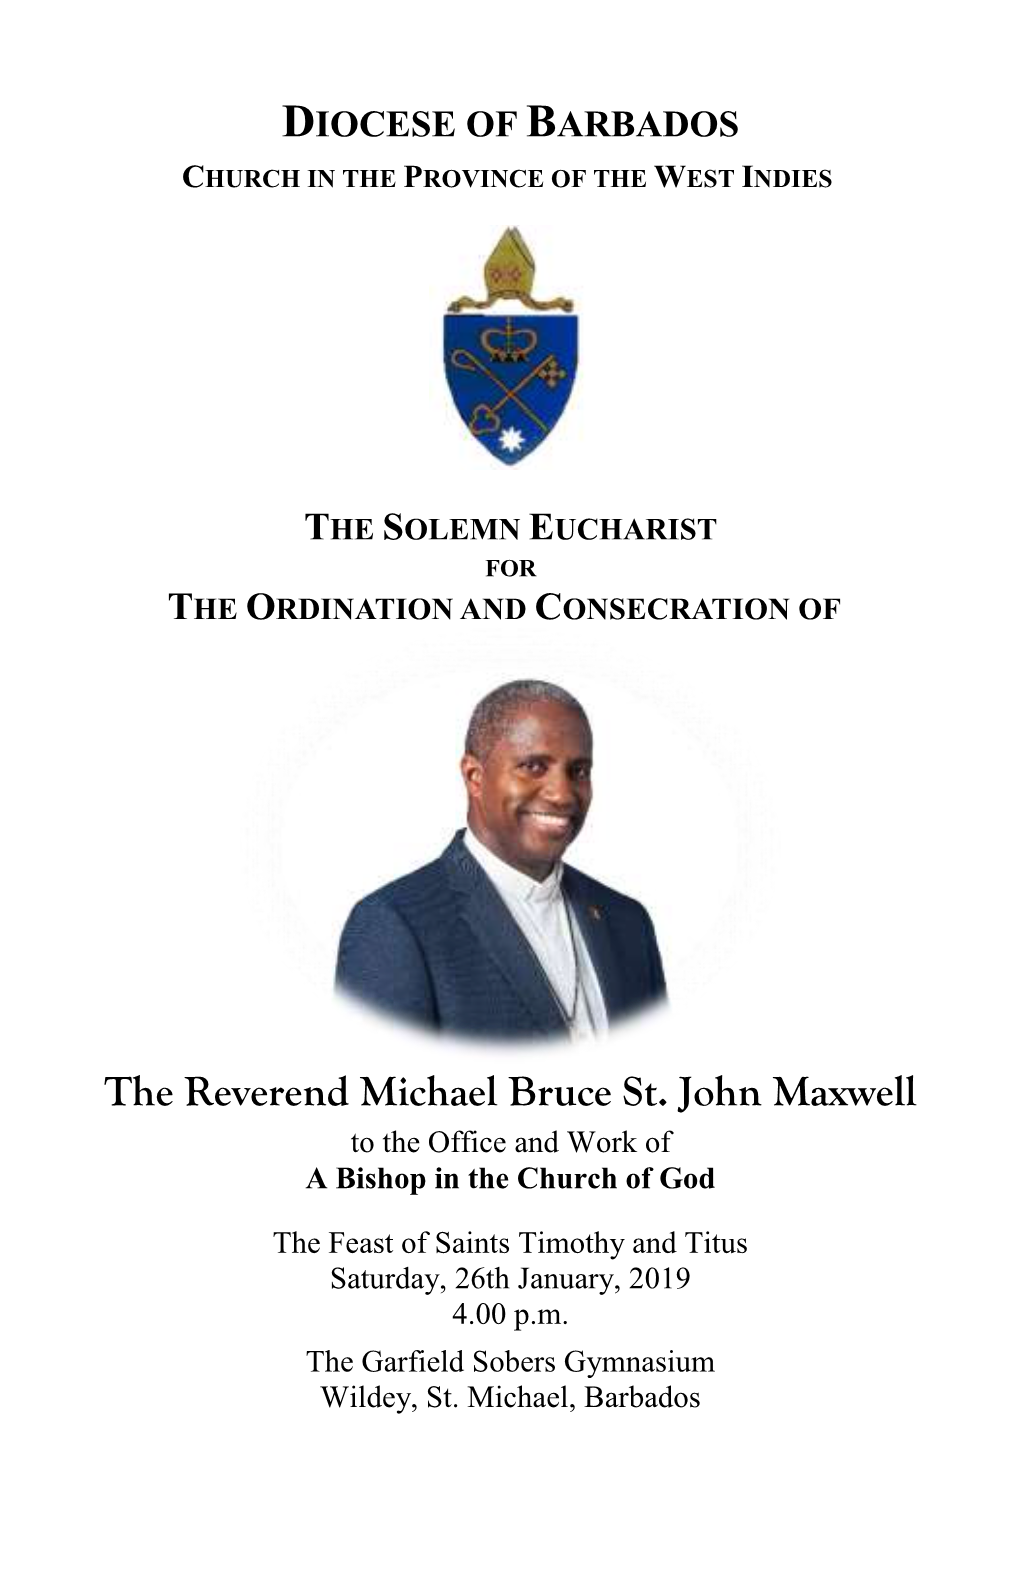 The Reverend Michael Bruce St. John Maxwell